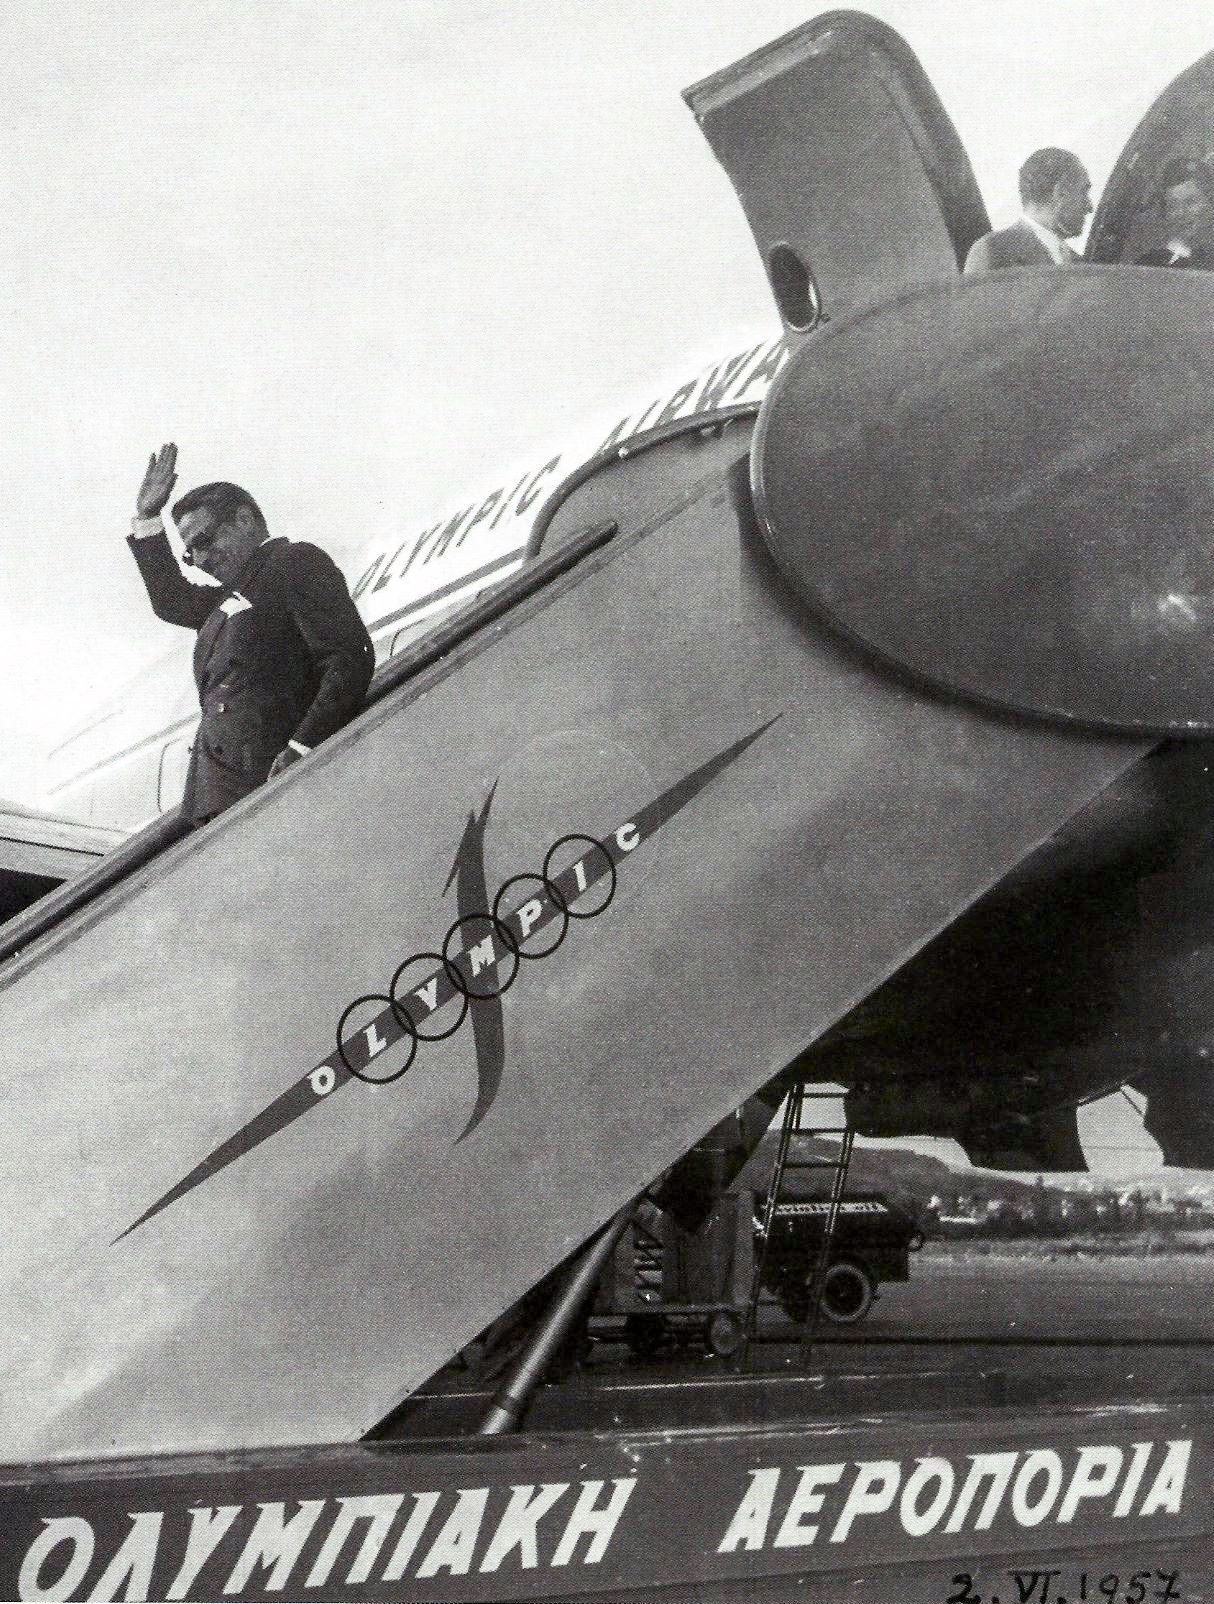 Ο Αριστοτέλης Ωνάσης αποβιβαζόμενος από σκάφος της Ολυμπιακής Αεροπορίας το 1957